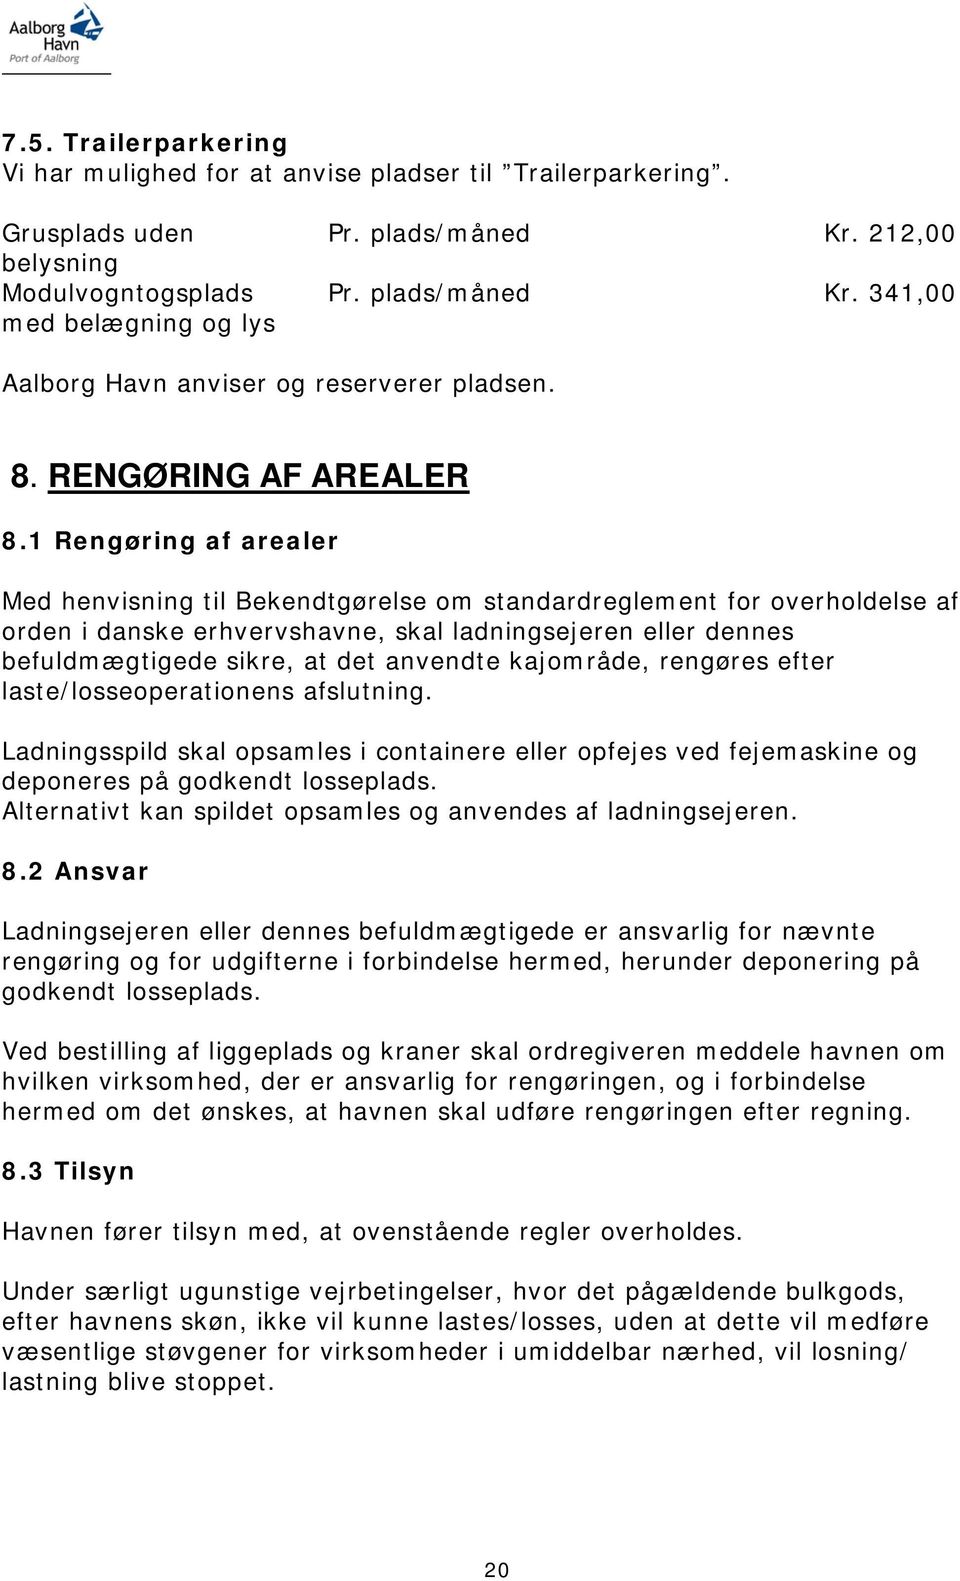 1 Rengøring af arealer Med henvisning til Bekendtgørelse om standardreglement for overholdelse af orden i danske erhvervshavne, skal ladningsejeren eller dennes befuldmægtigede sikre, at det anvendte